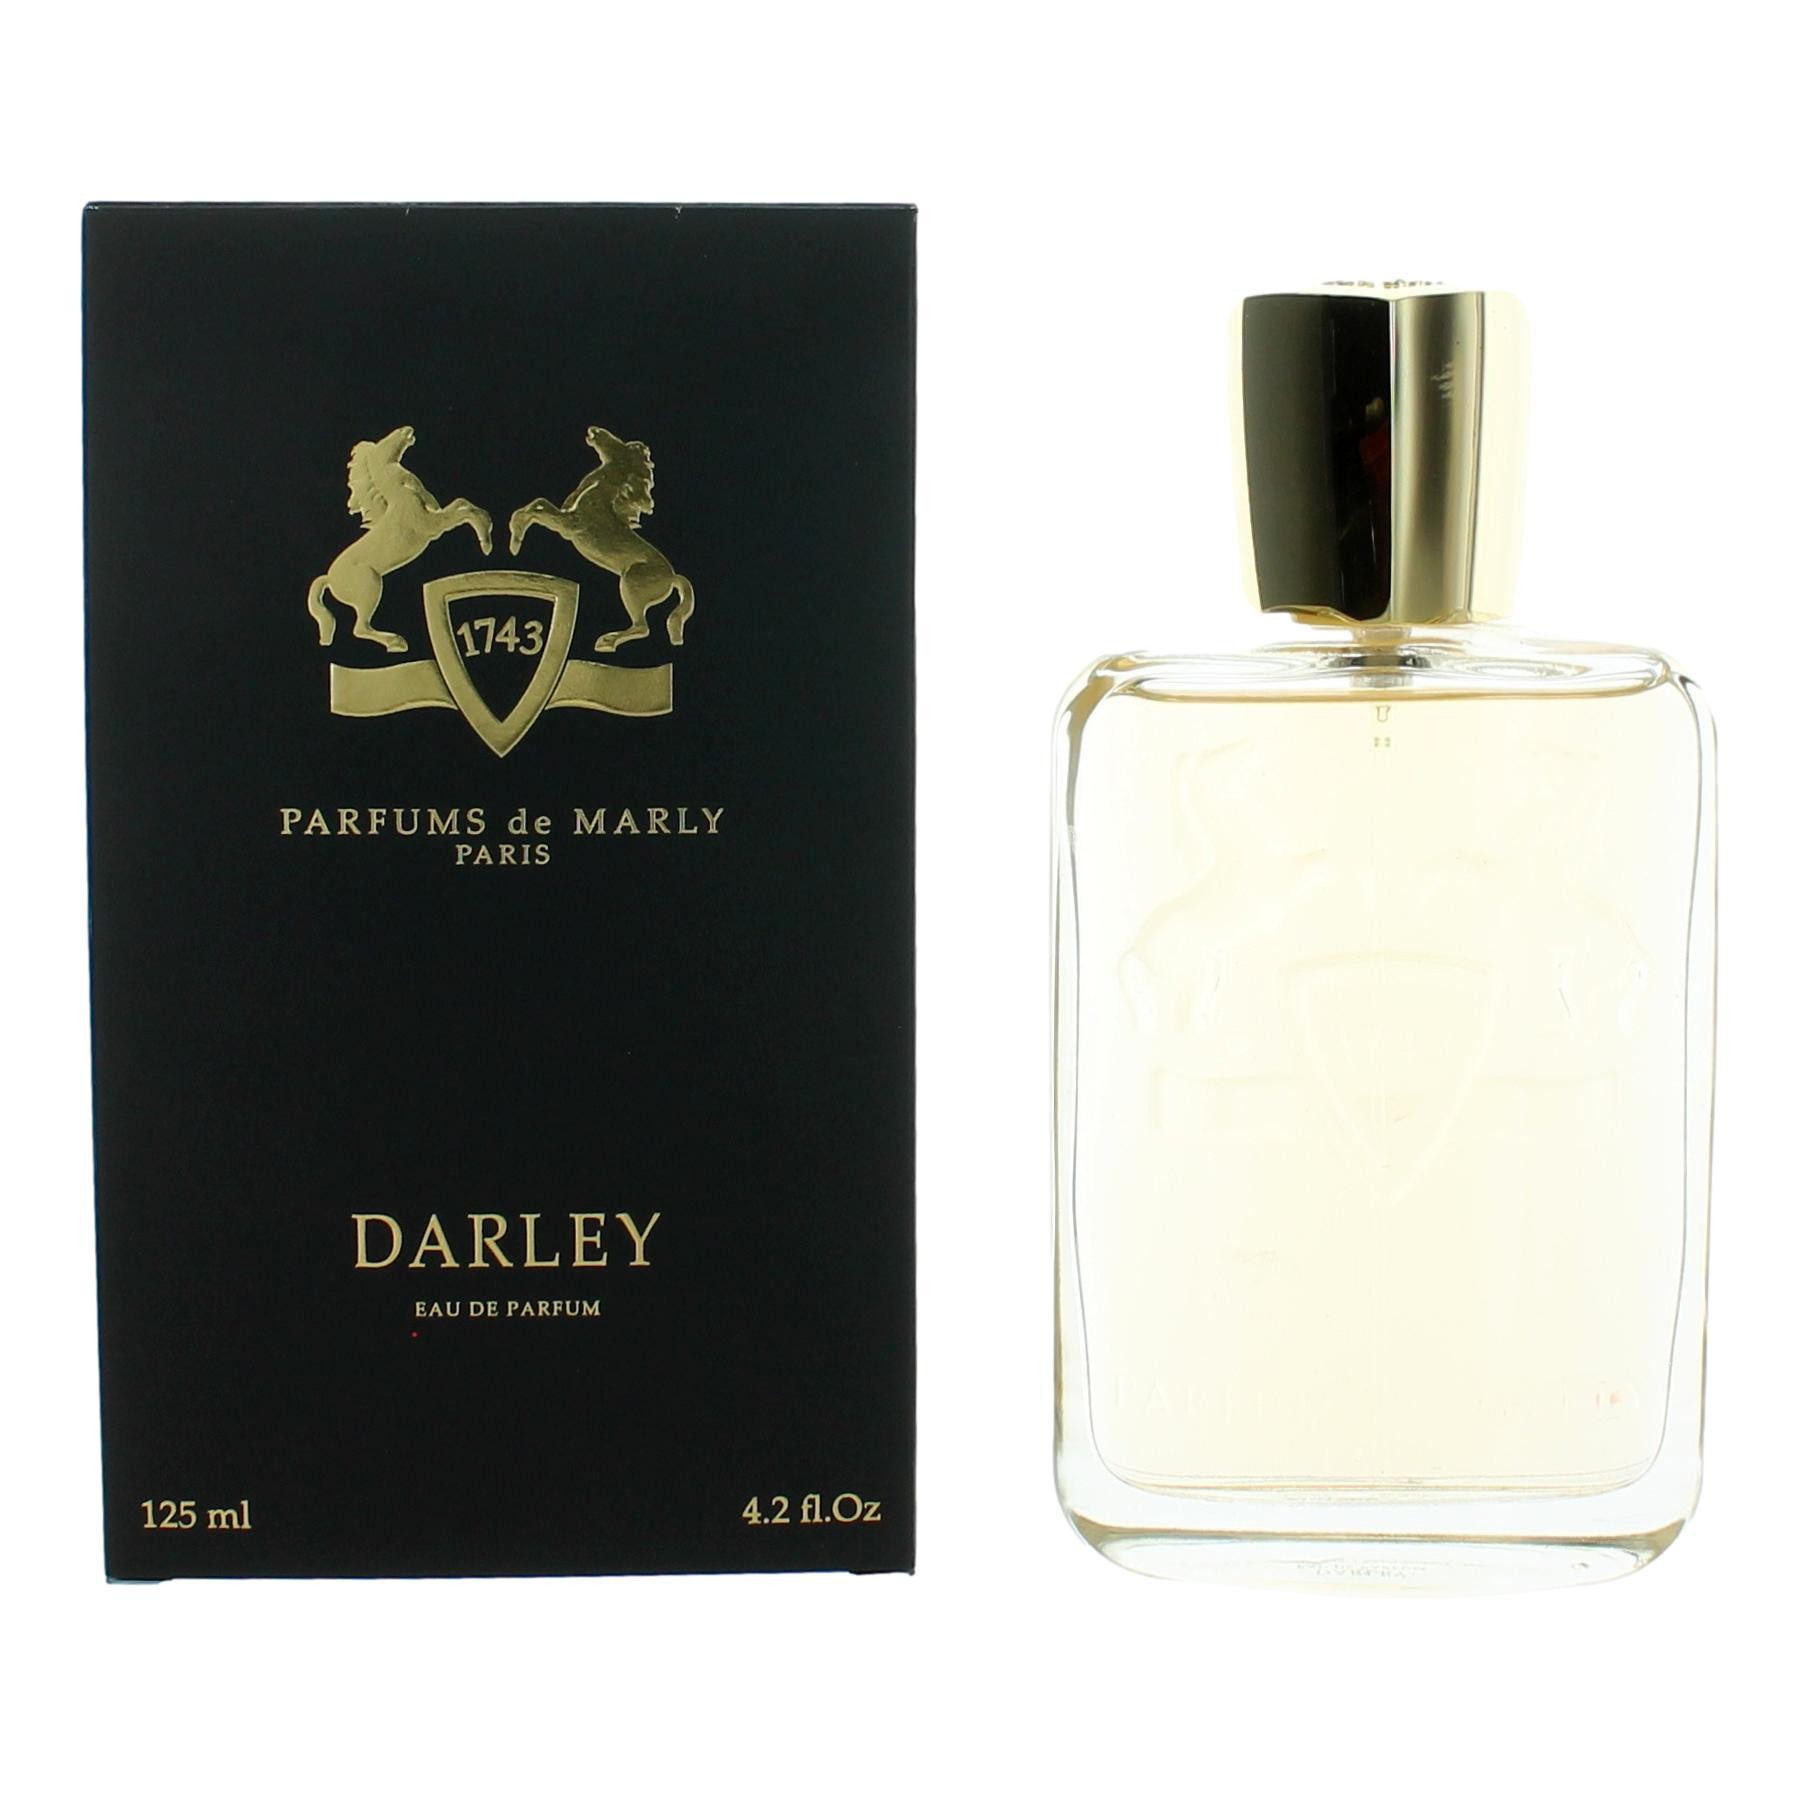 Parfums de Marly Darley by Parfums de Marly 4.2 oz Eau De Parfum Spray for Men